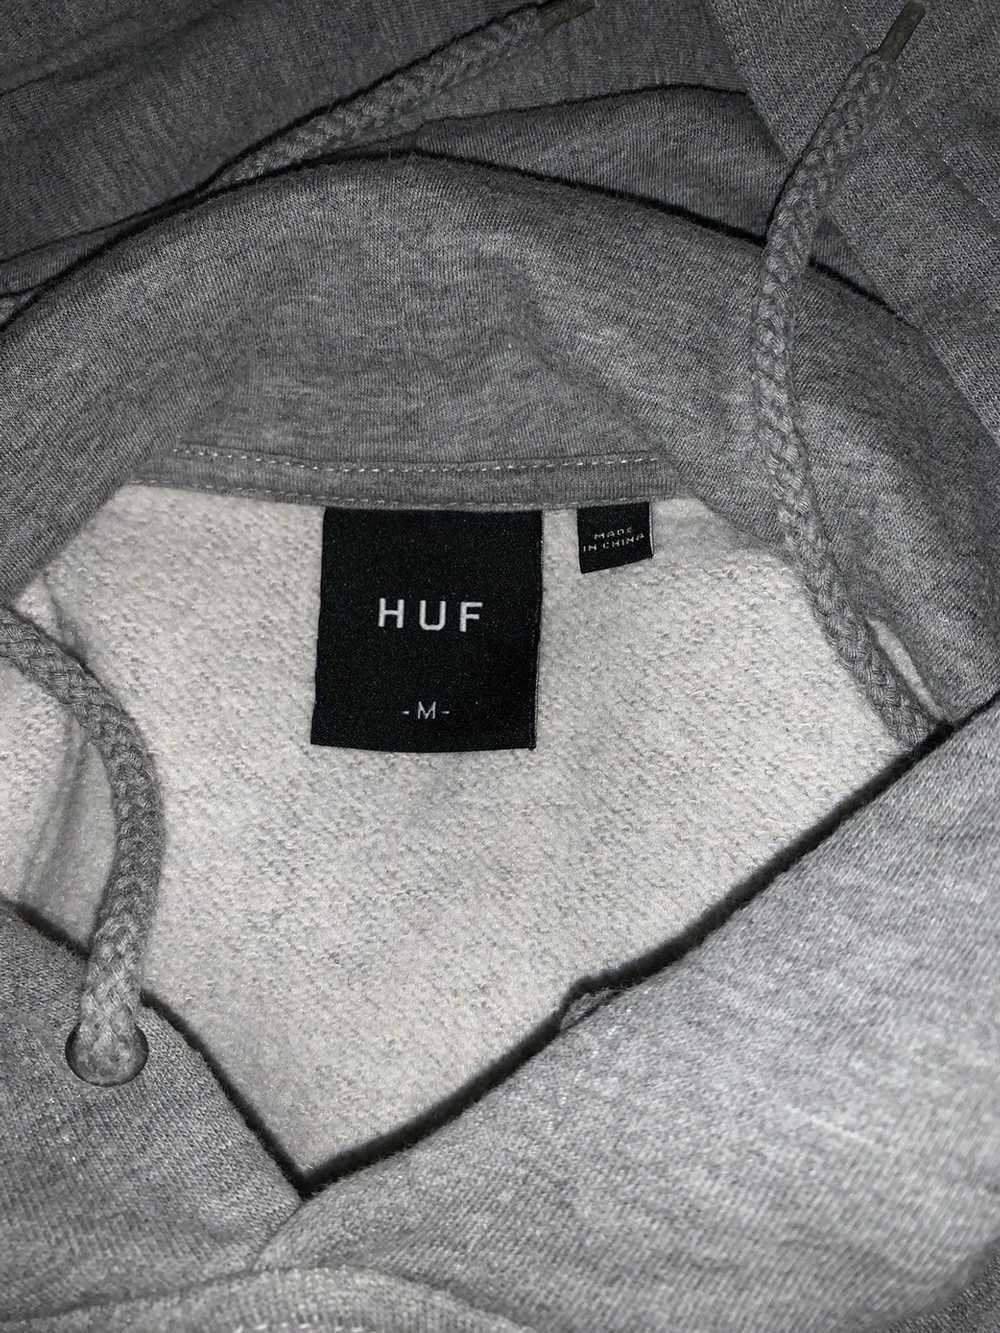 Huf HUF Worldwide Hoodie - image 2